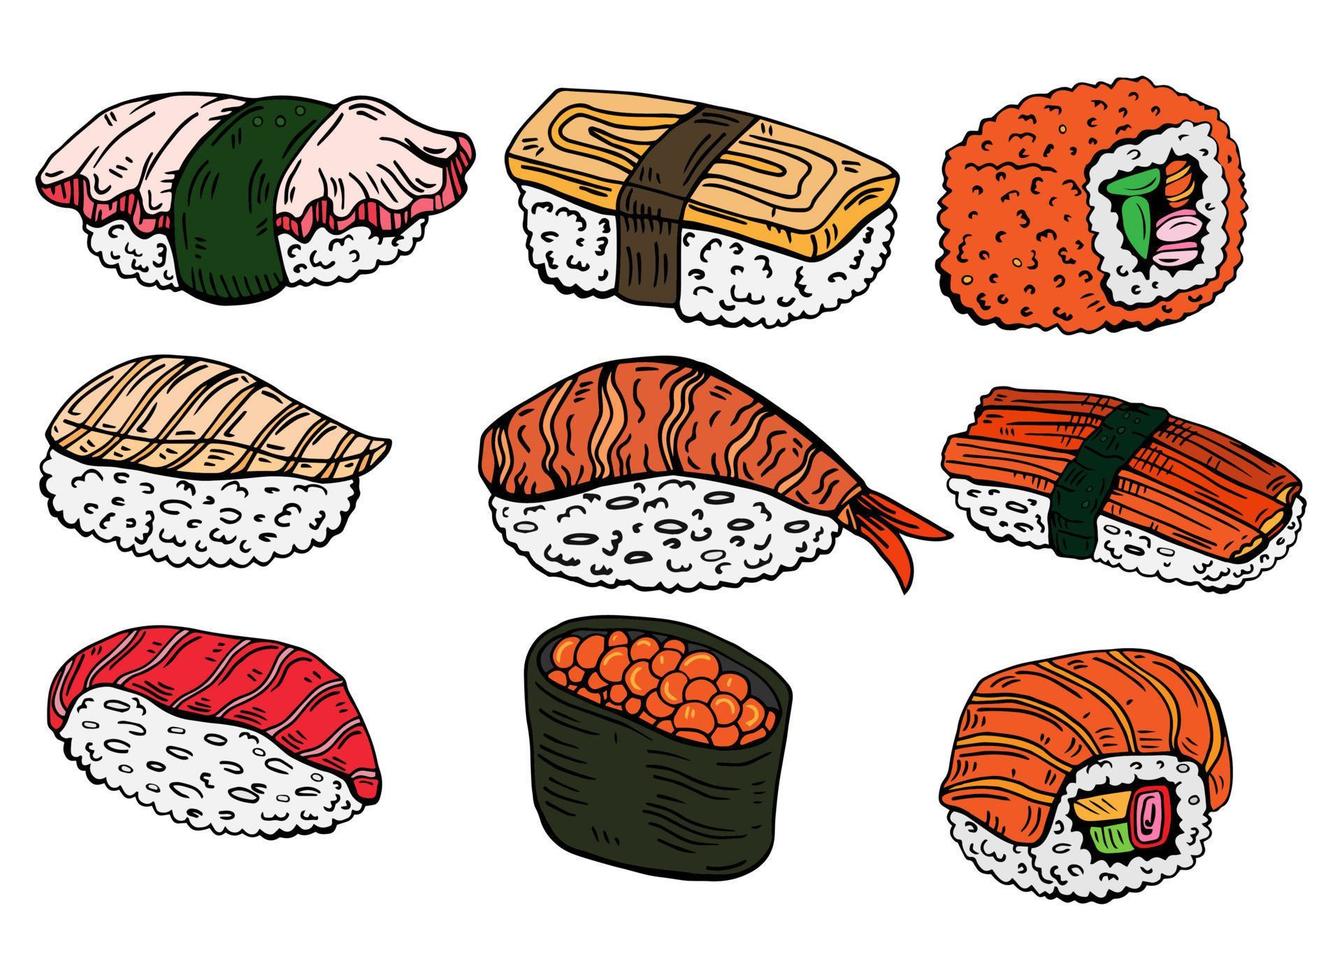 ensemble de sushis et petits pains. plats de cuisine traditionnelle japonaise - nigiri, temaki, tamago, sashimi, uramaki, futomaki. dessin vectoriel à main levée isolé sur fond blanc pour le menu du restaurant asiatique.